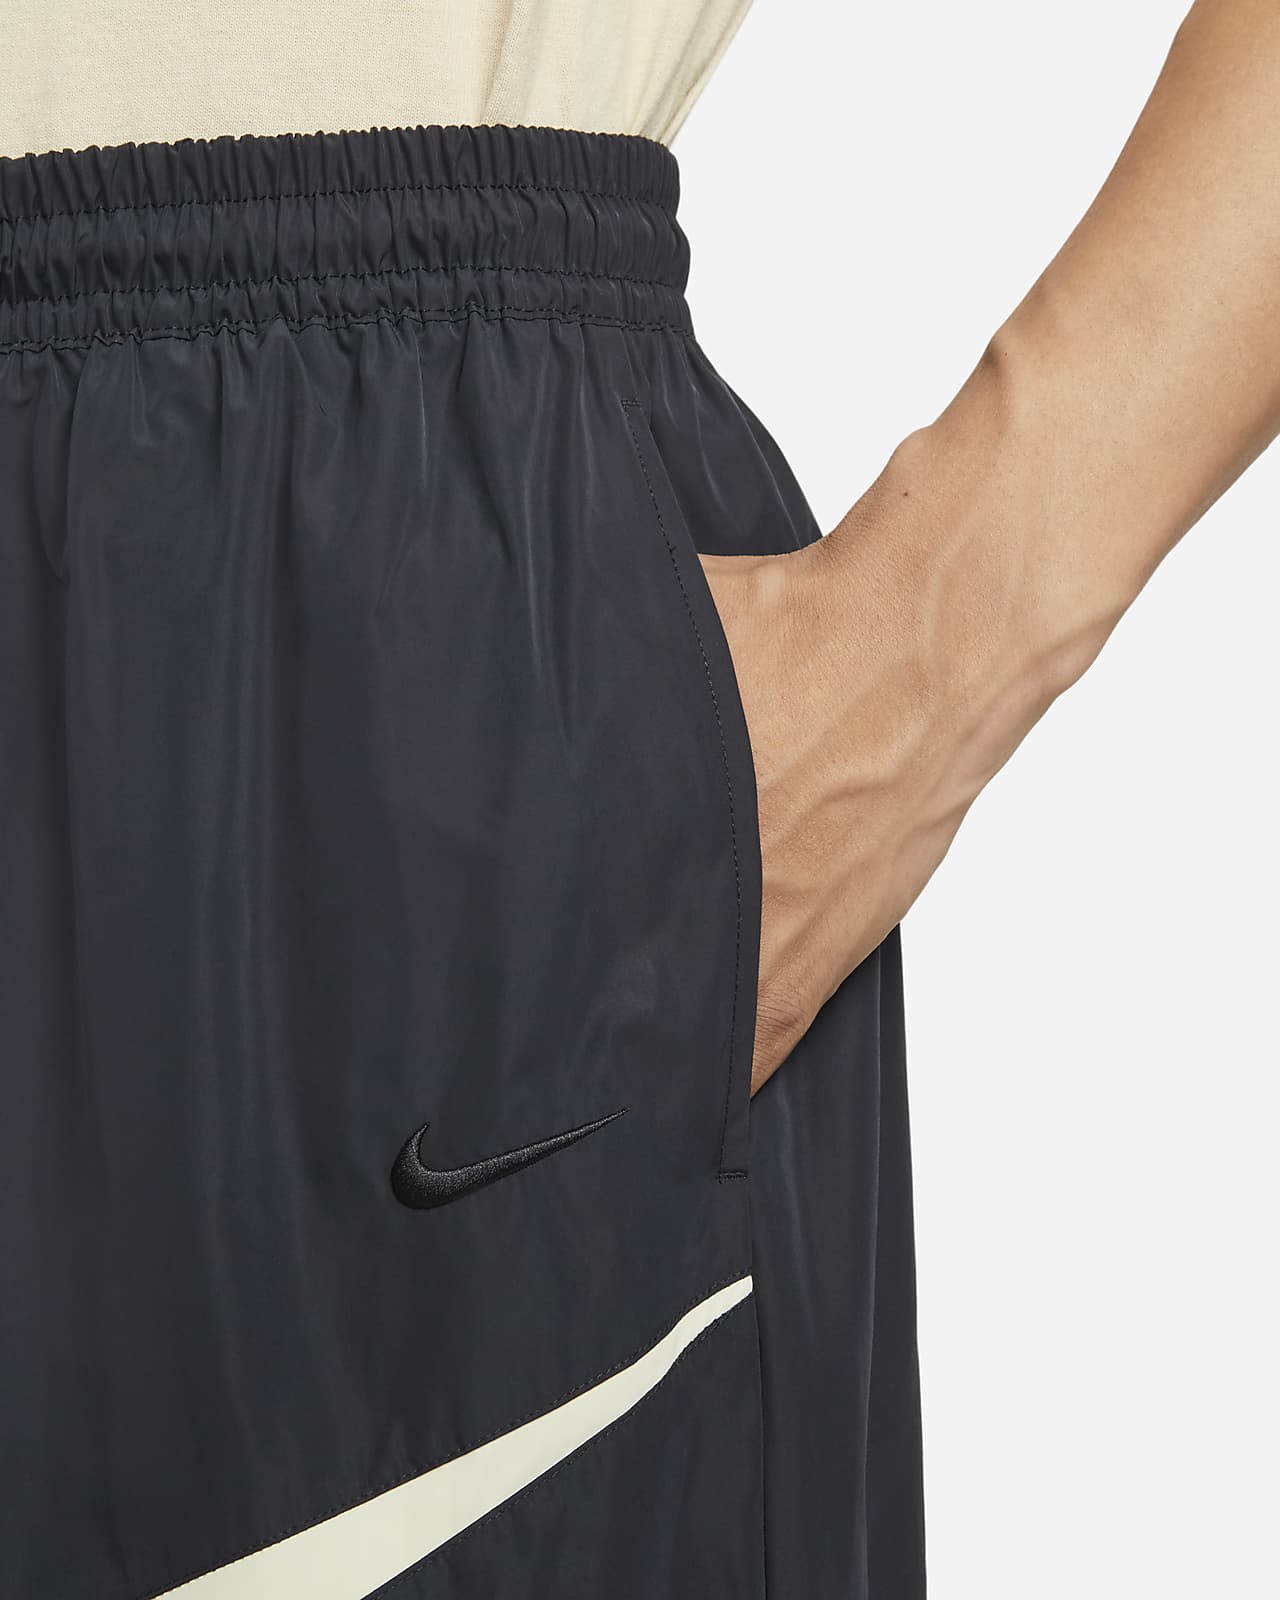 Nike Sportswear Swoosh Men’s Woven Pants